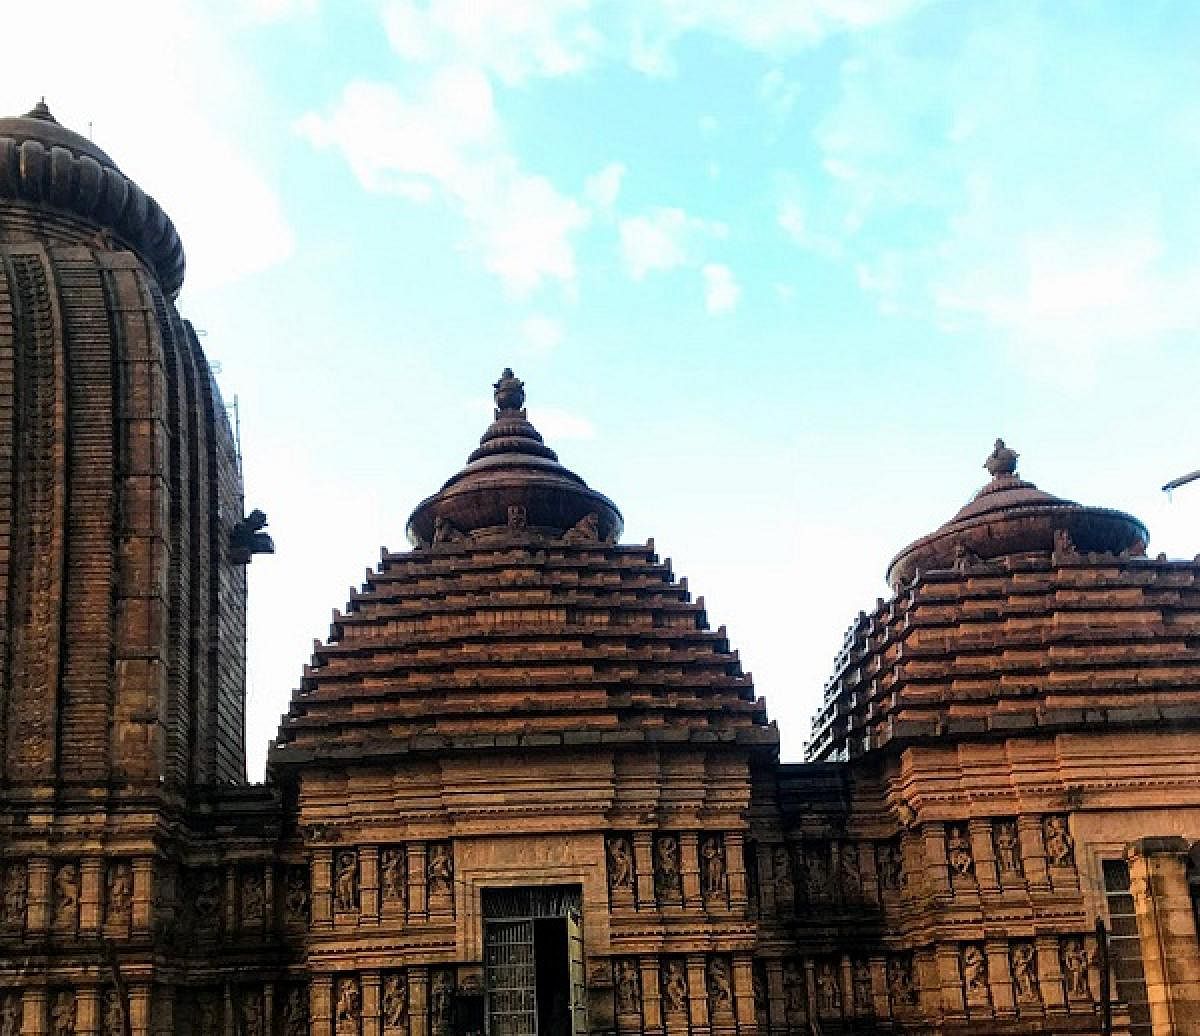 Taratarini temple, Odisha.